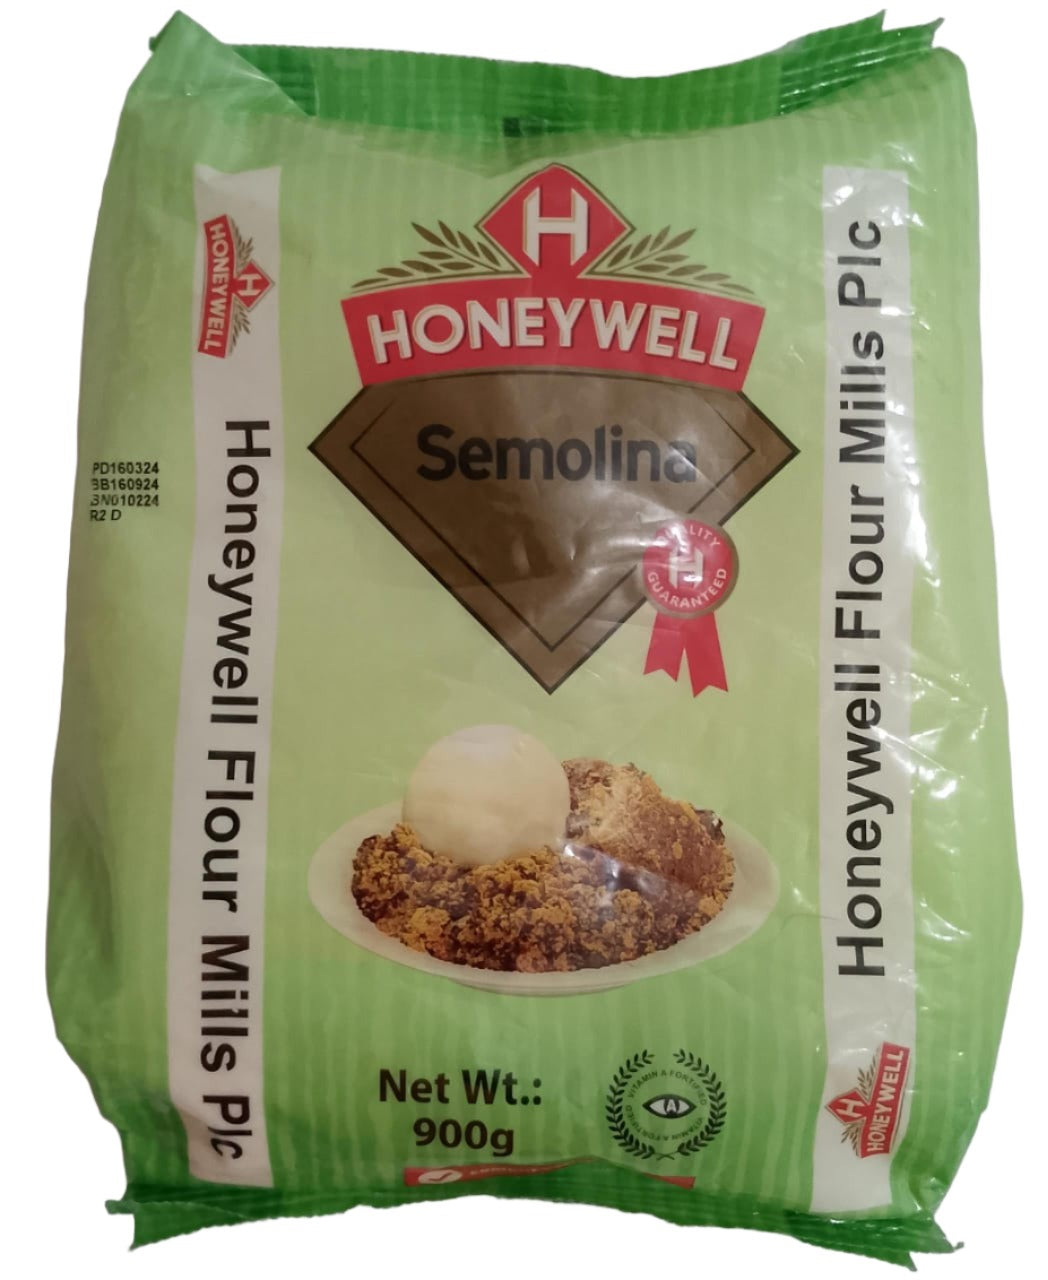 Best Honeywell Semolina Flour Mills 900g | DNF19a